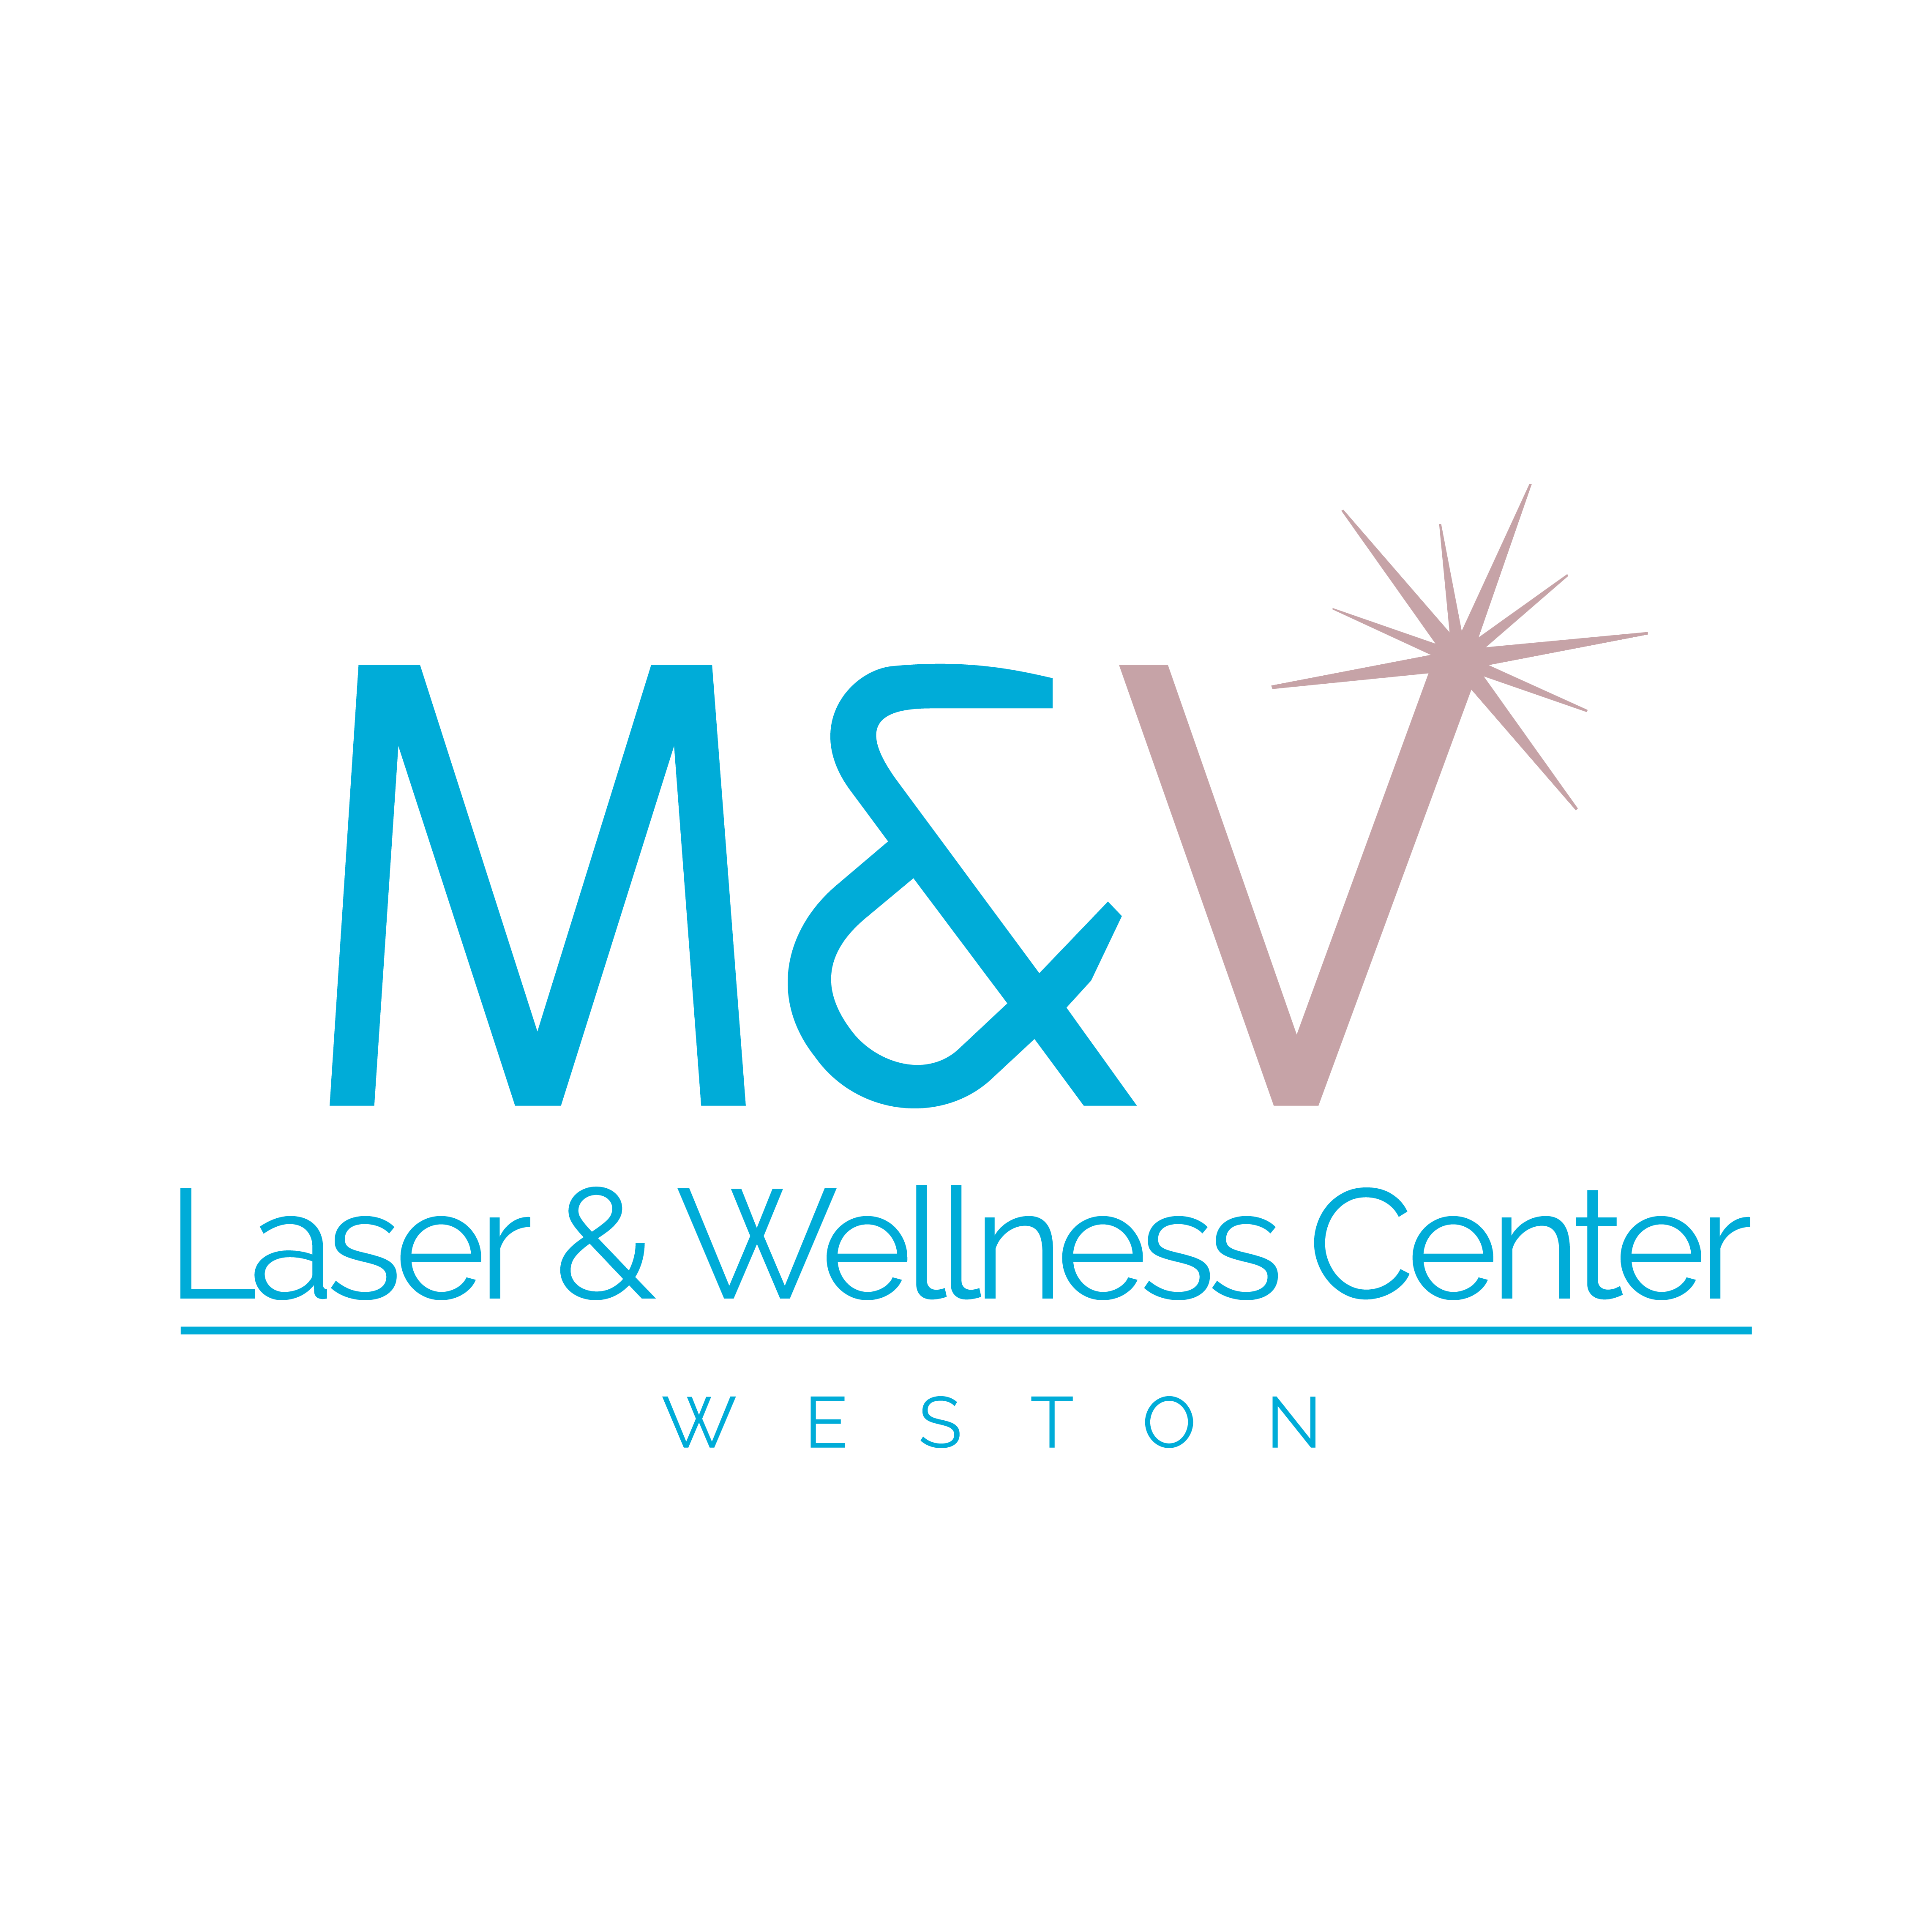 M&V Laser & Wellness Center